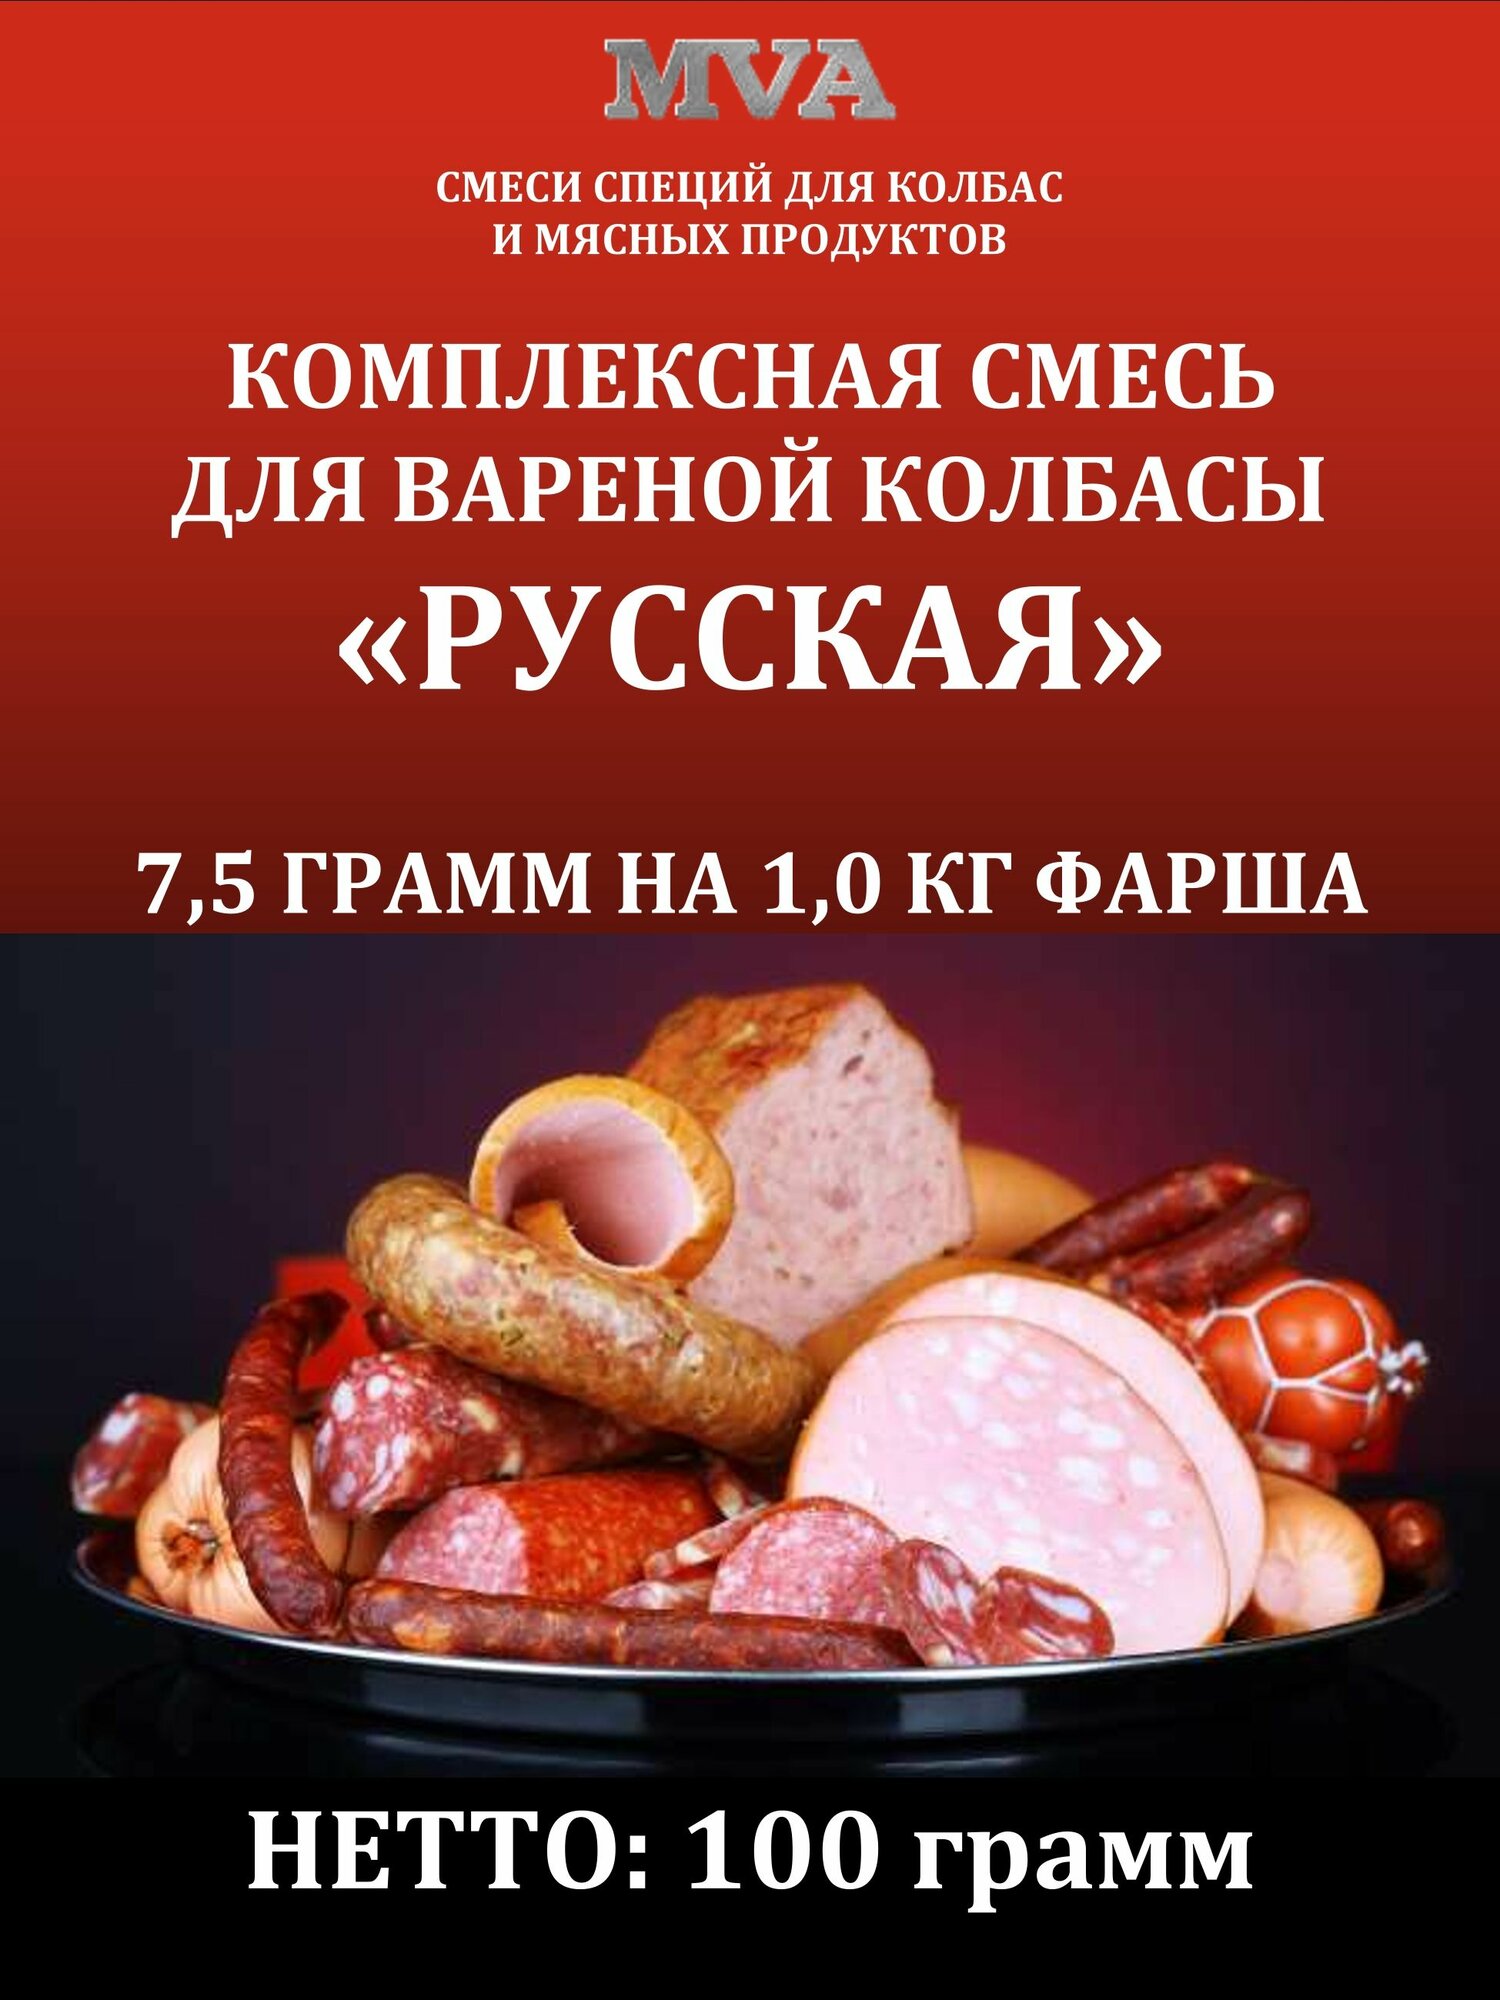 Комплексная смесь для вареной колбасы "Русская"